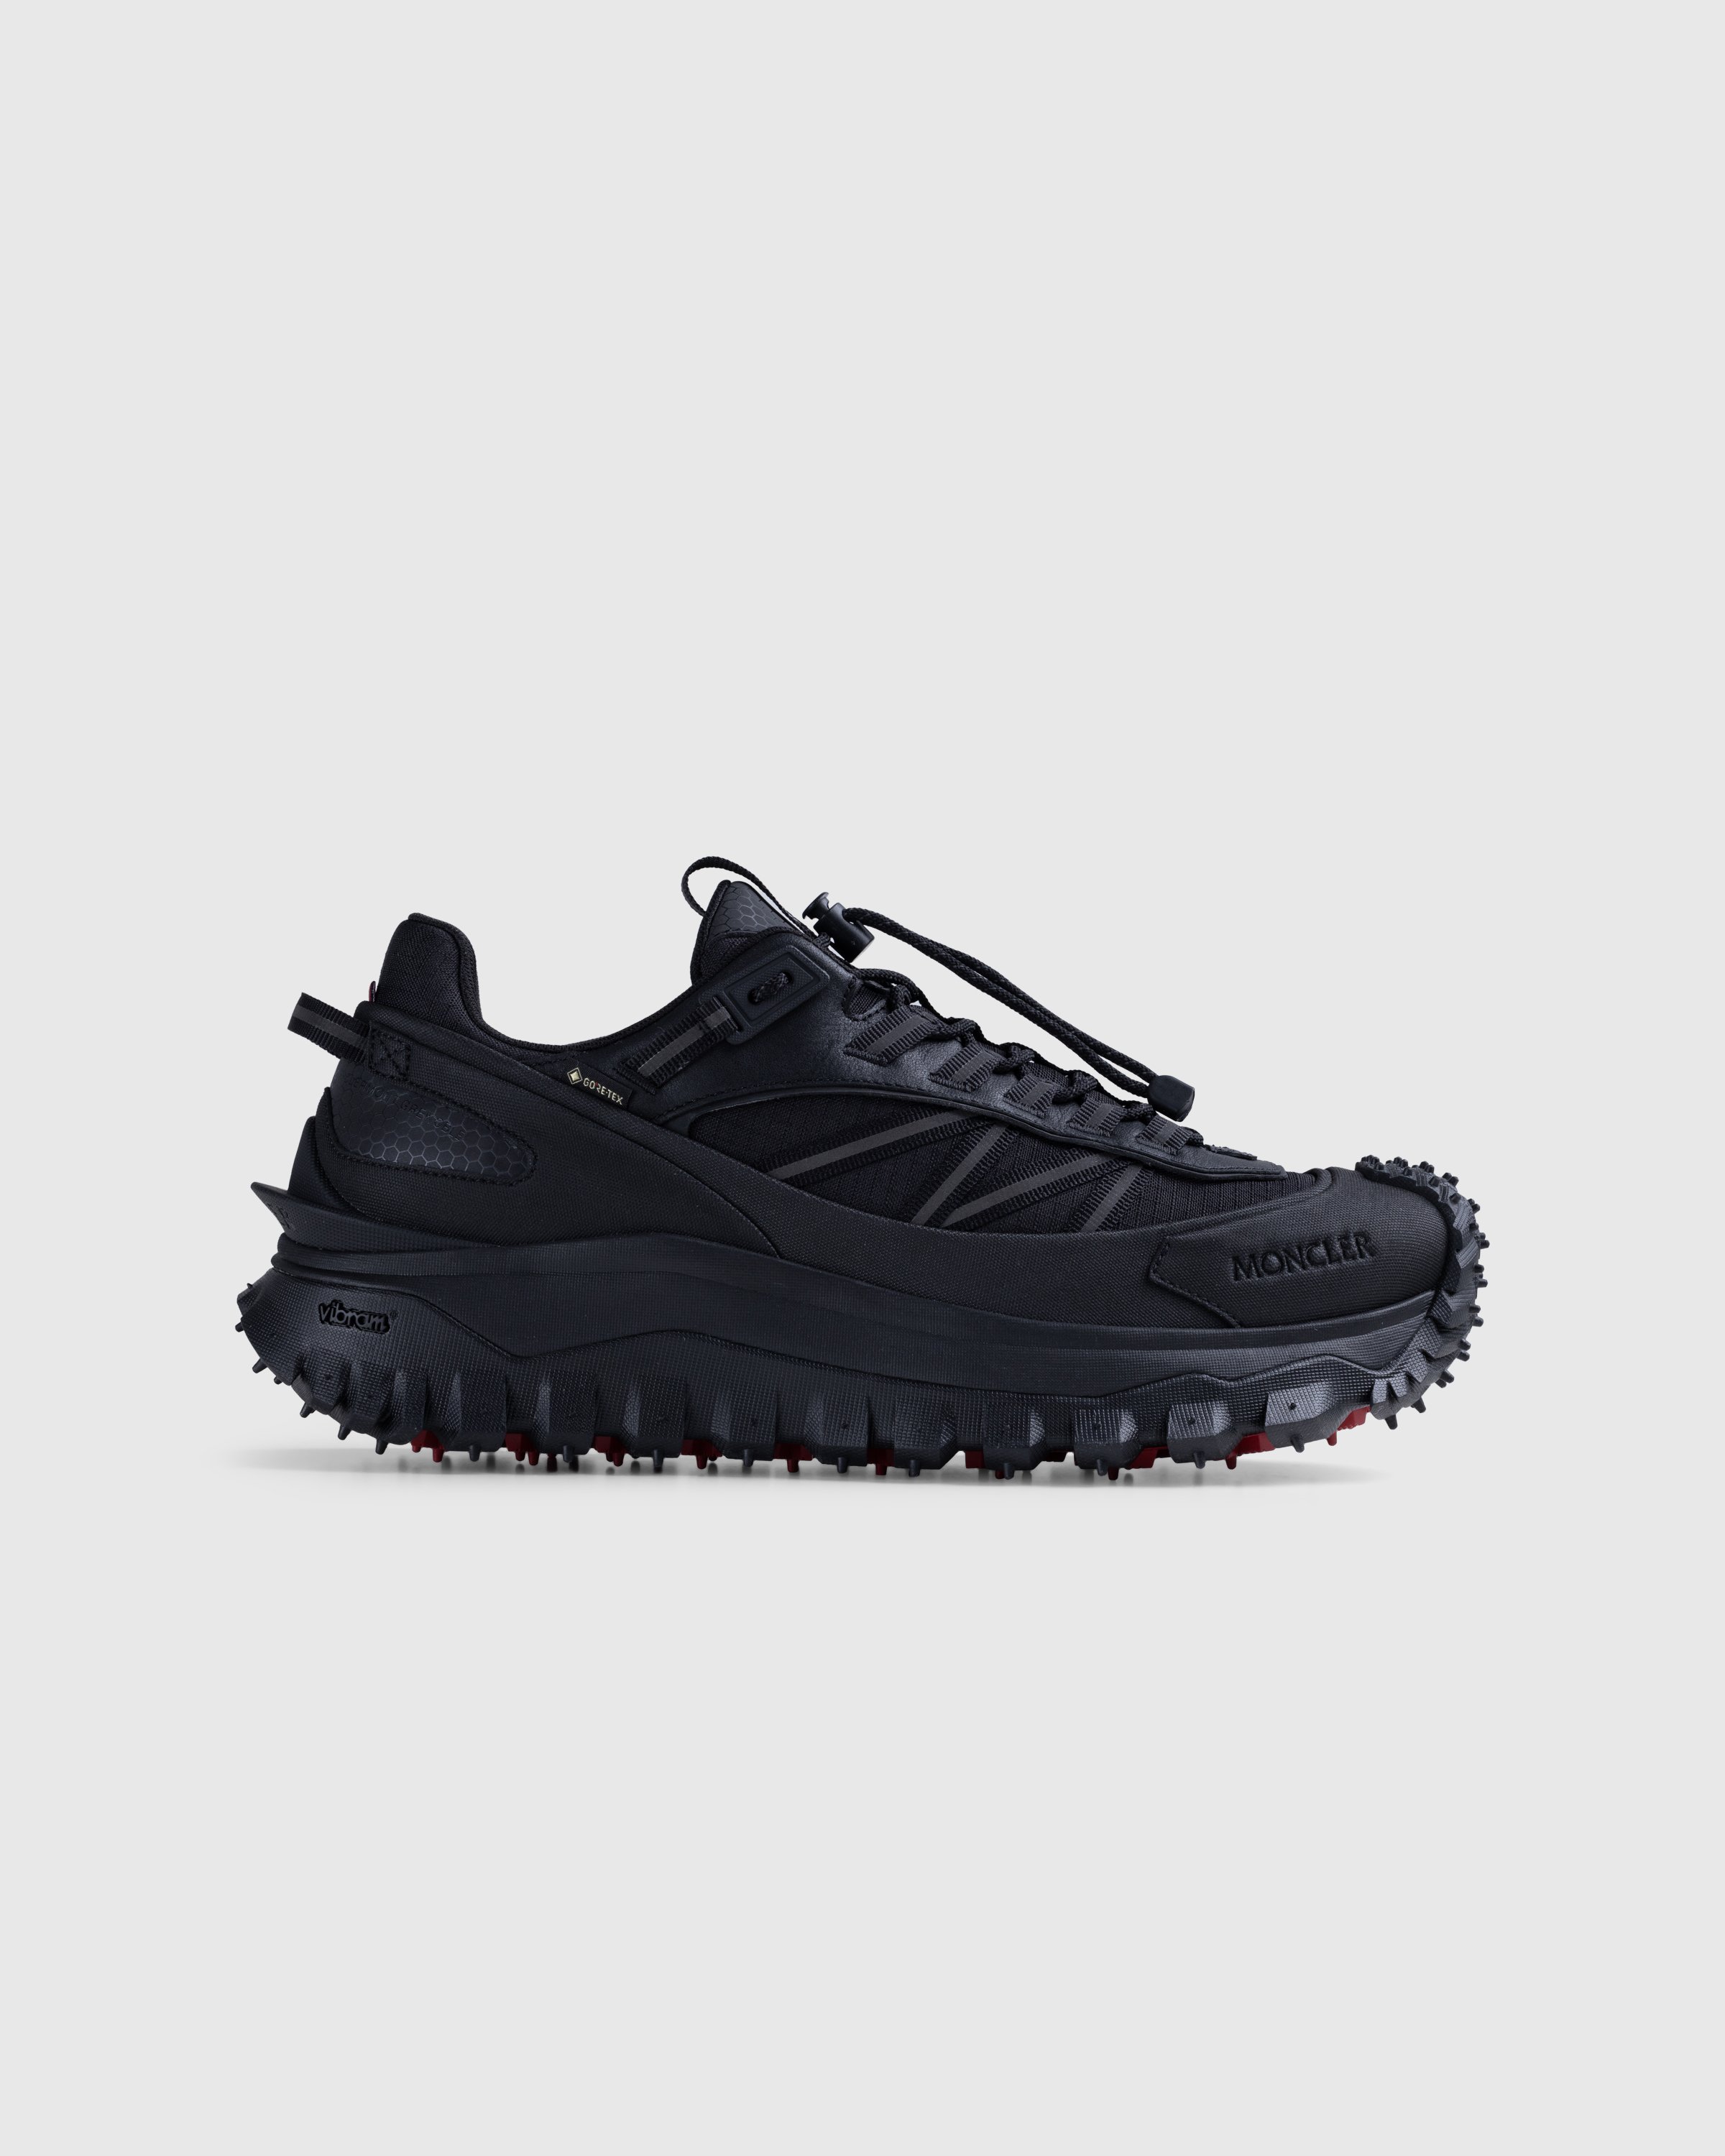 Moncler - Trailgrip GTX Low-Top Sneakers Black - Footwear - Black - Image 1